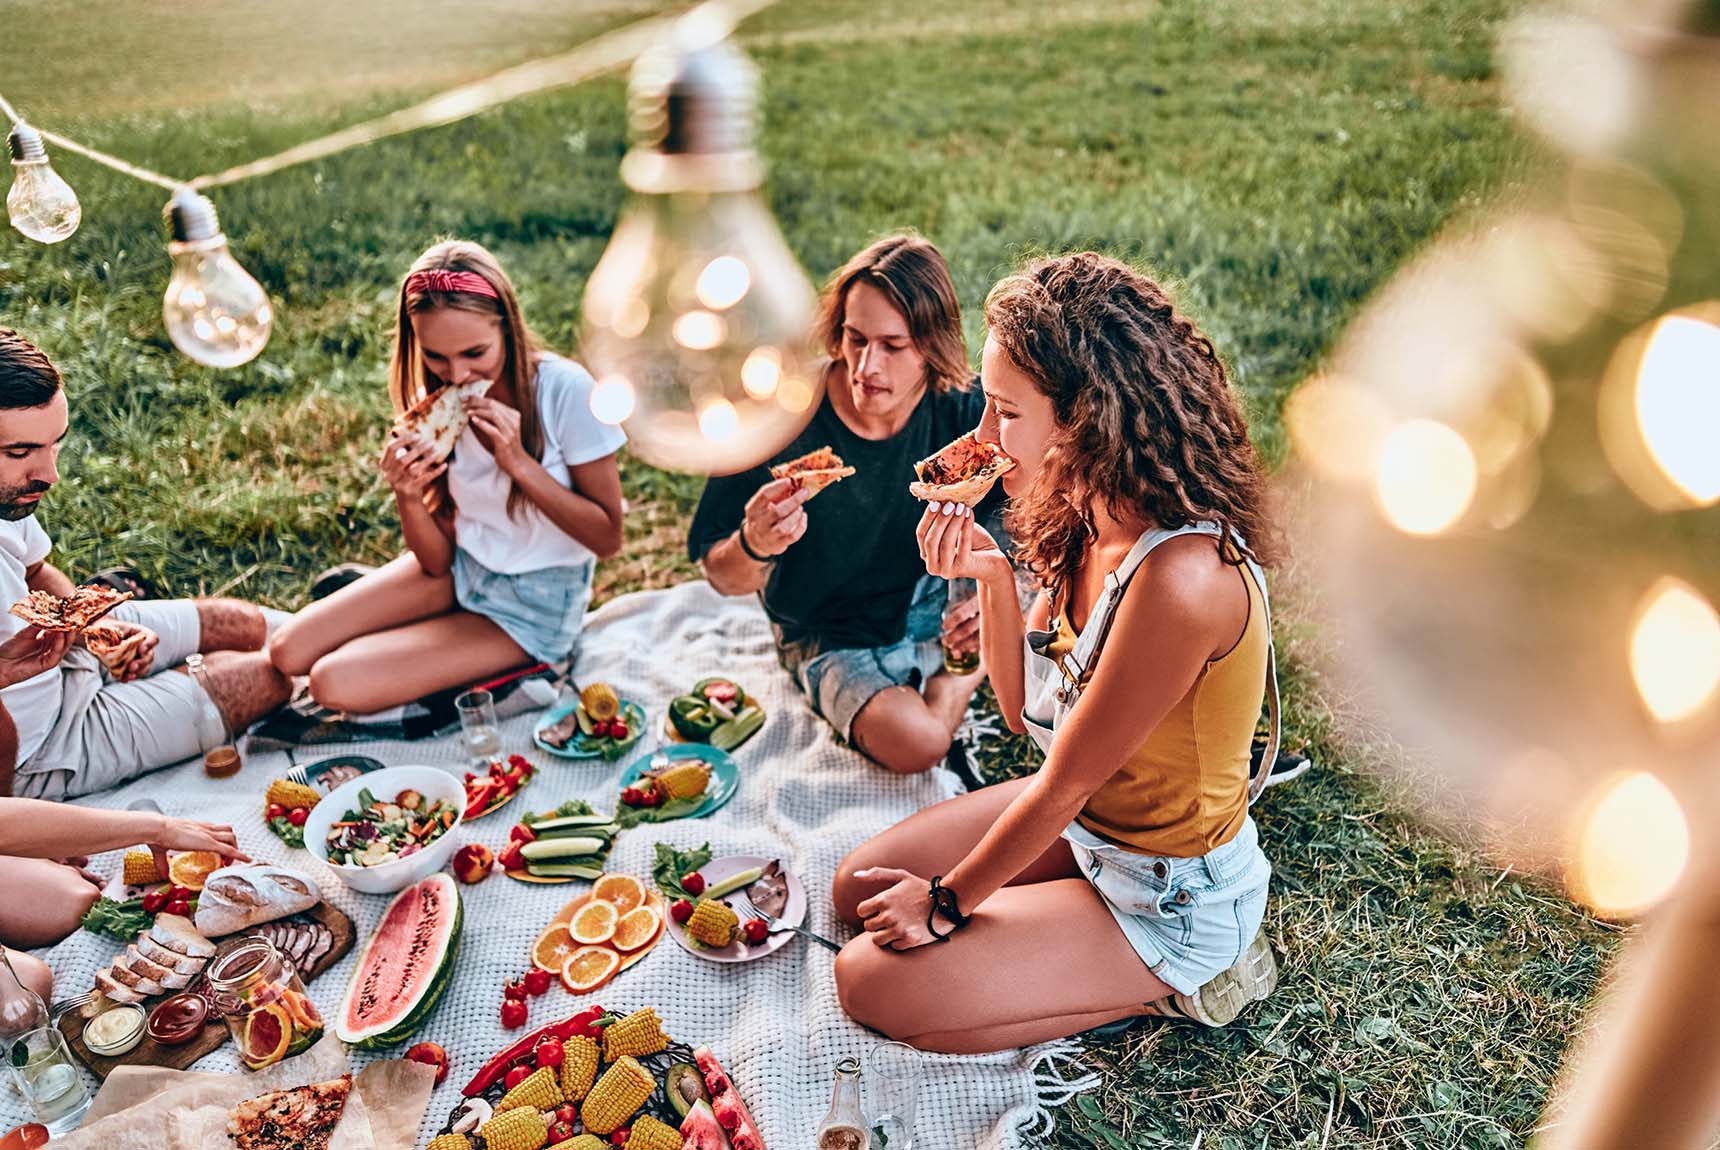 Happy family enjoying outdoor meal - Famille heureuse mangeant à l'extérieur